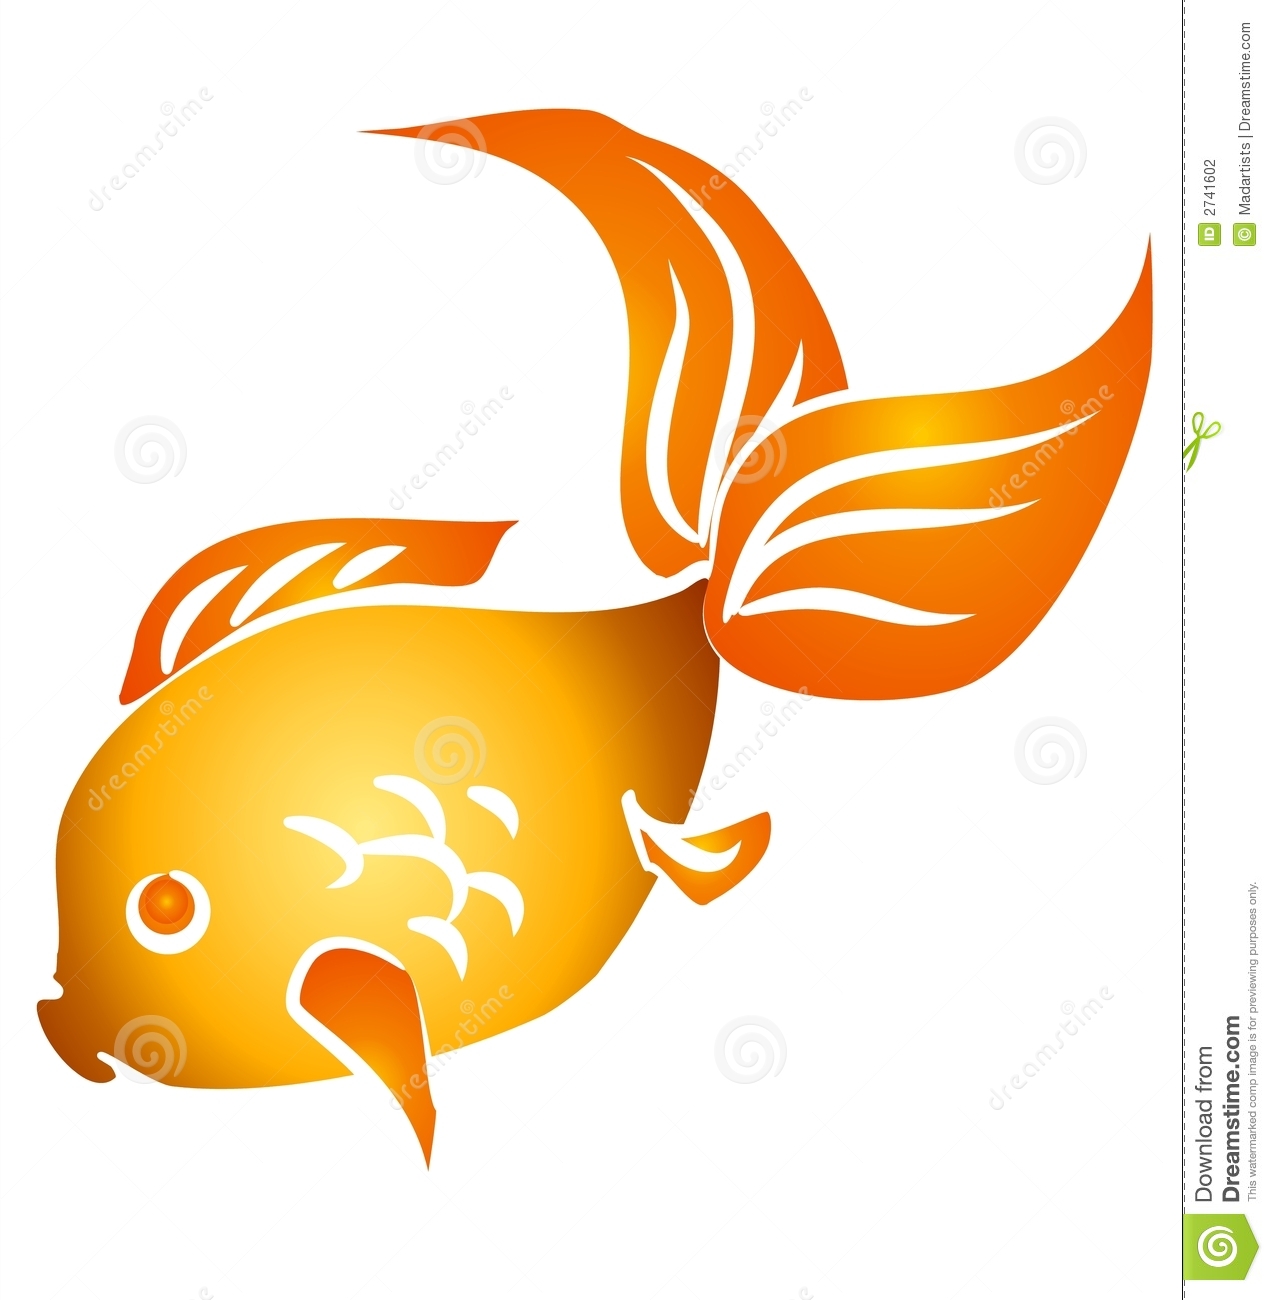 cracker clipart golden fish